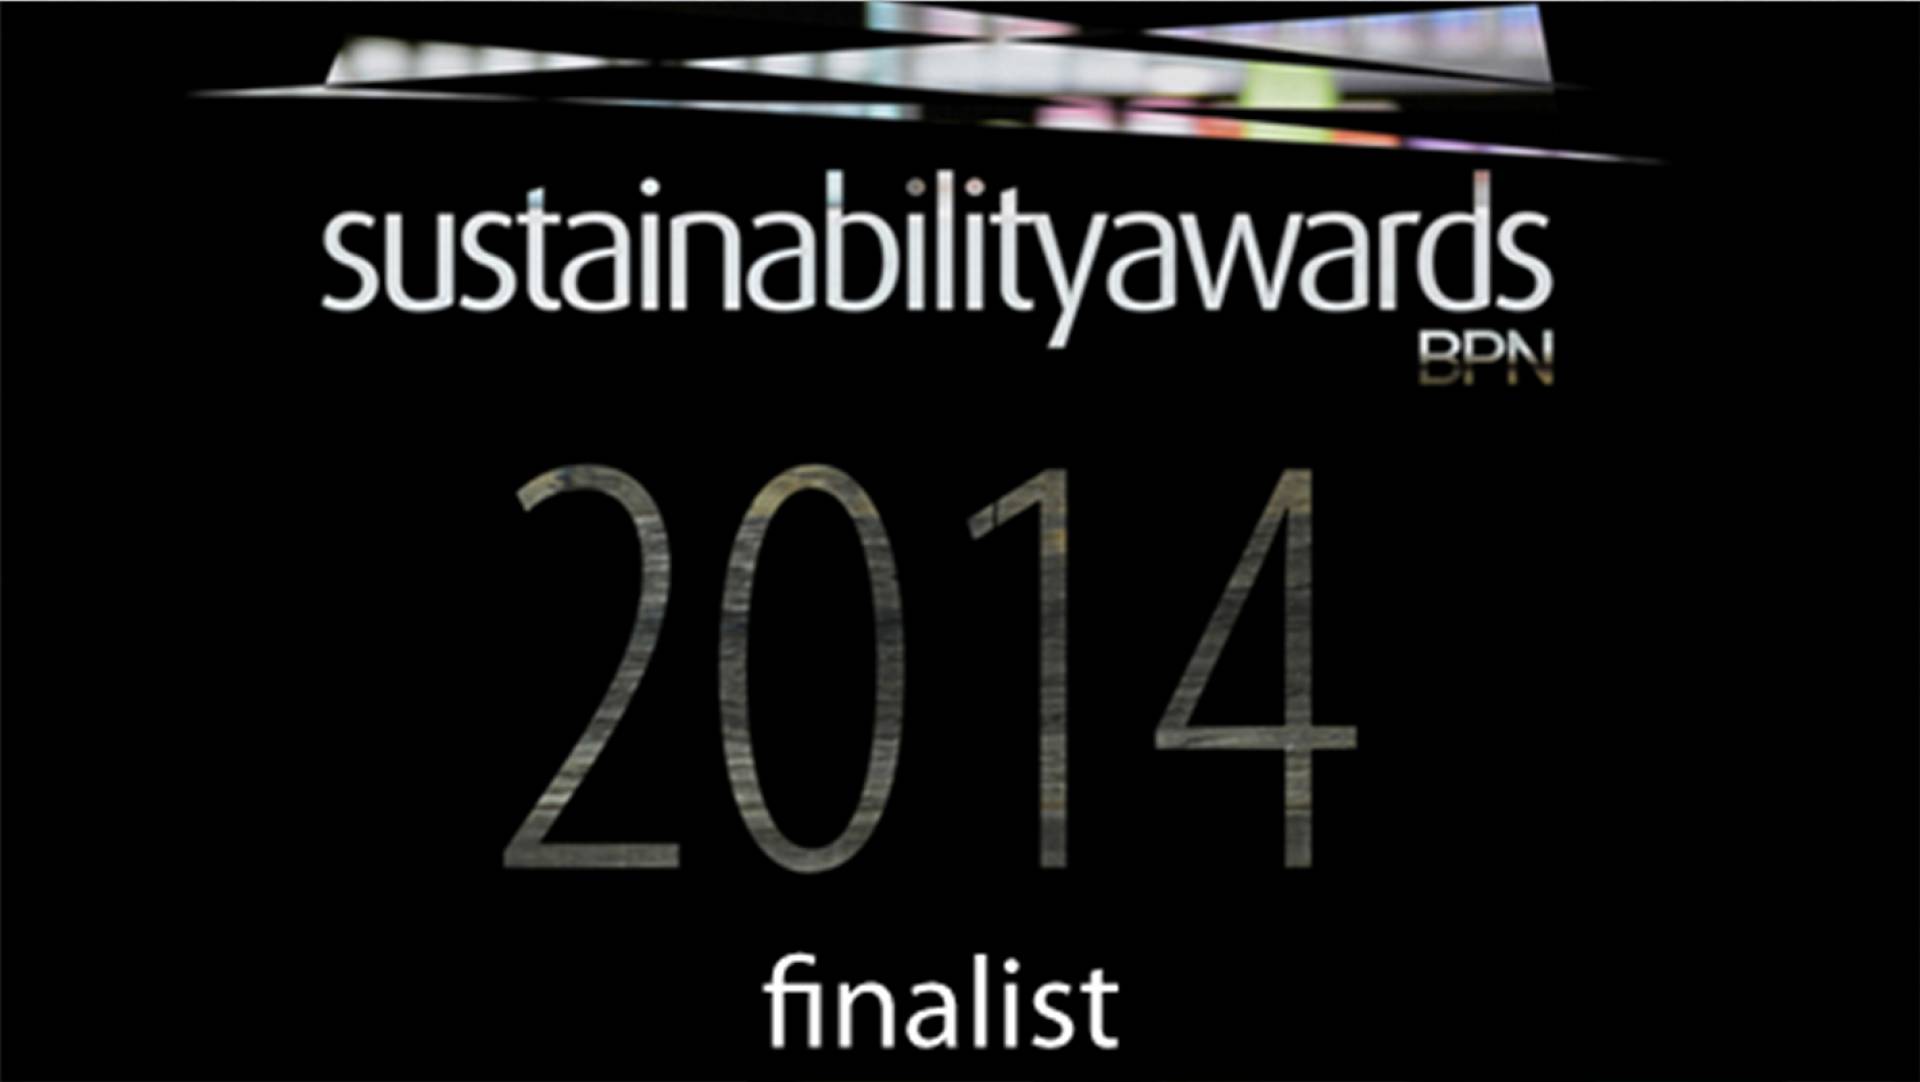 BPN Sustainablity Awards